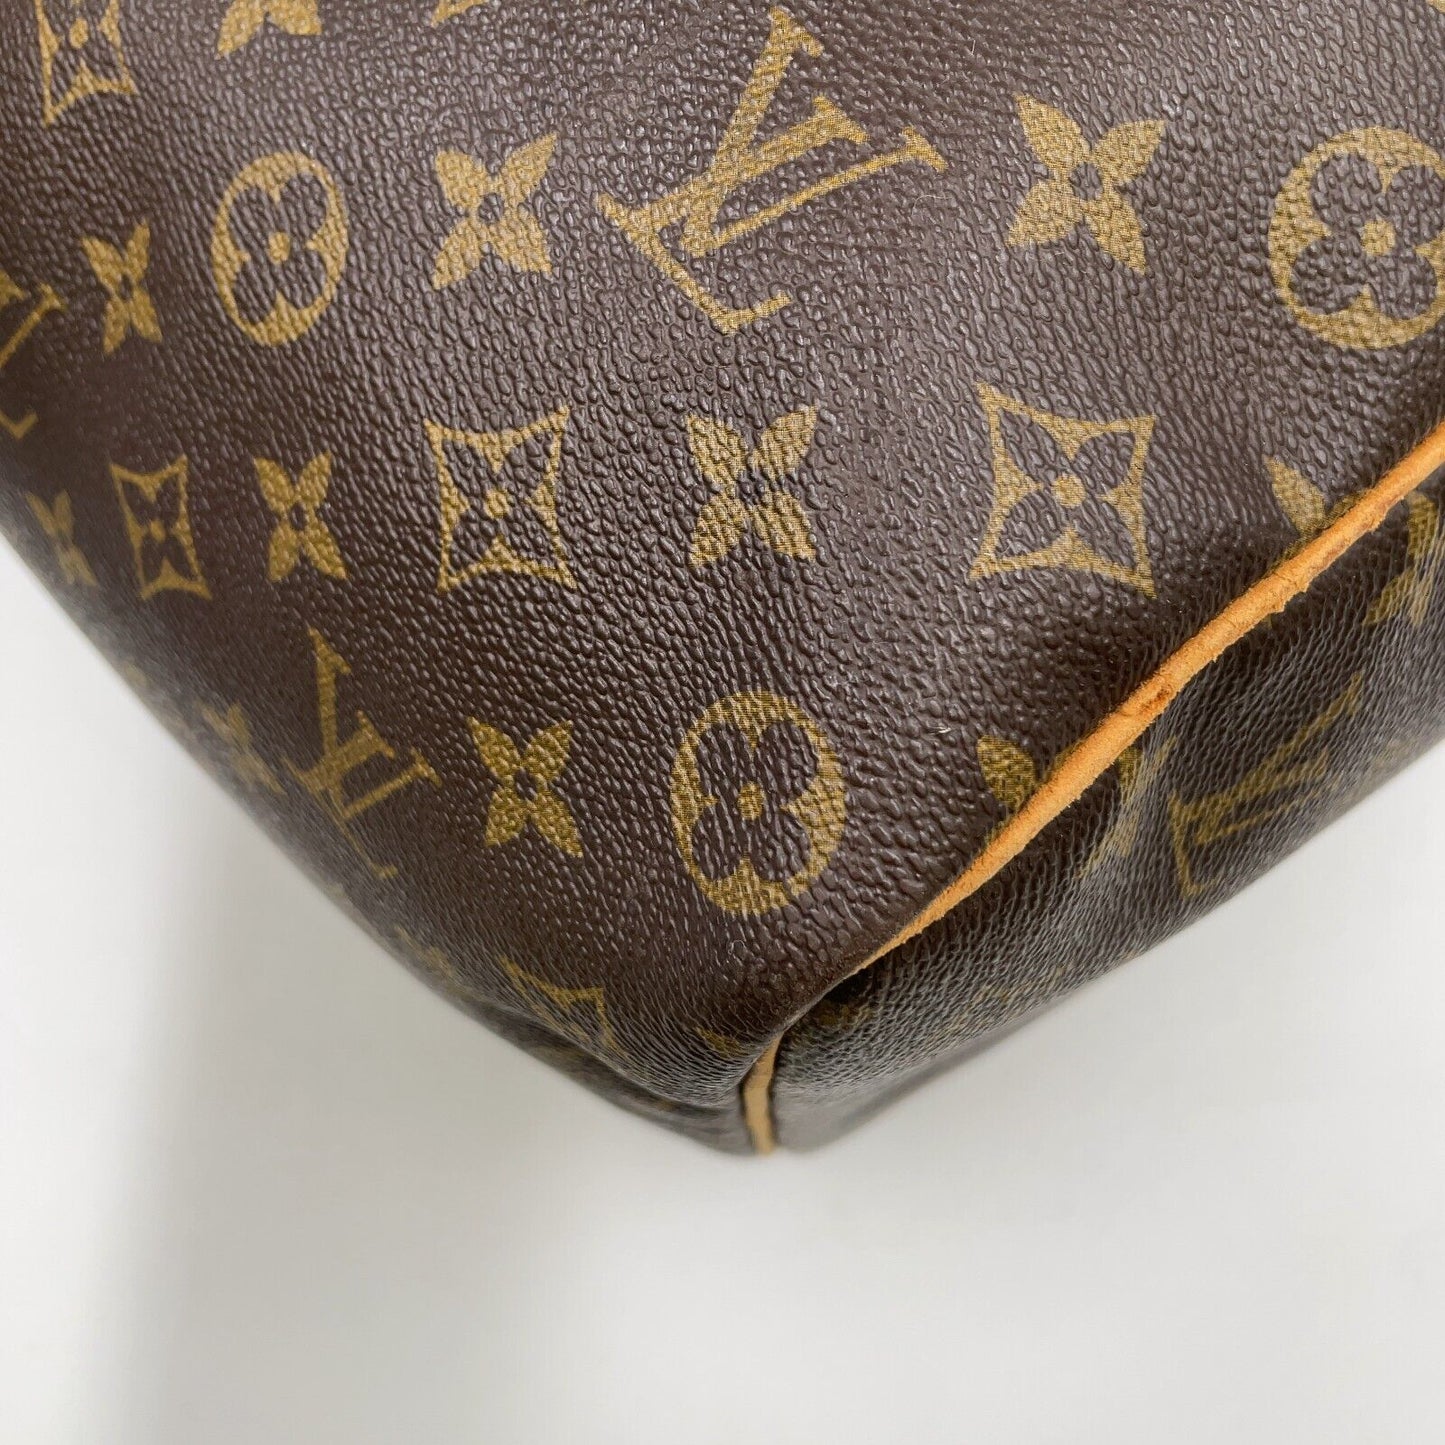 Original/Auth Louis Vuitton - Keepall 50 Boston Tasche - Klassisch - Monogramm